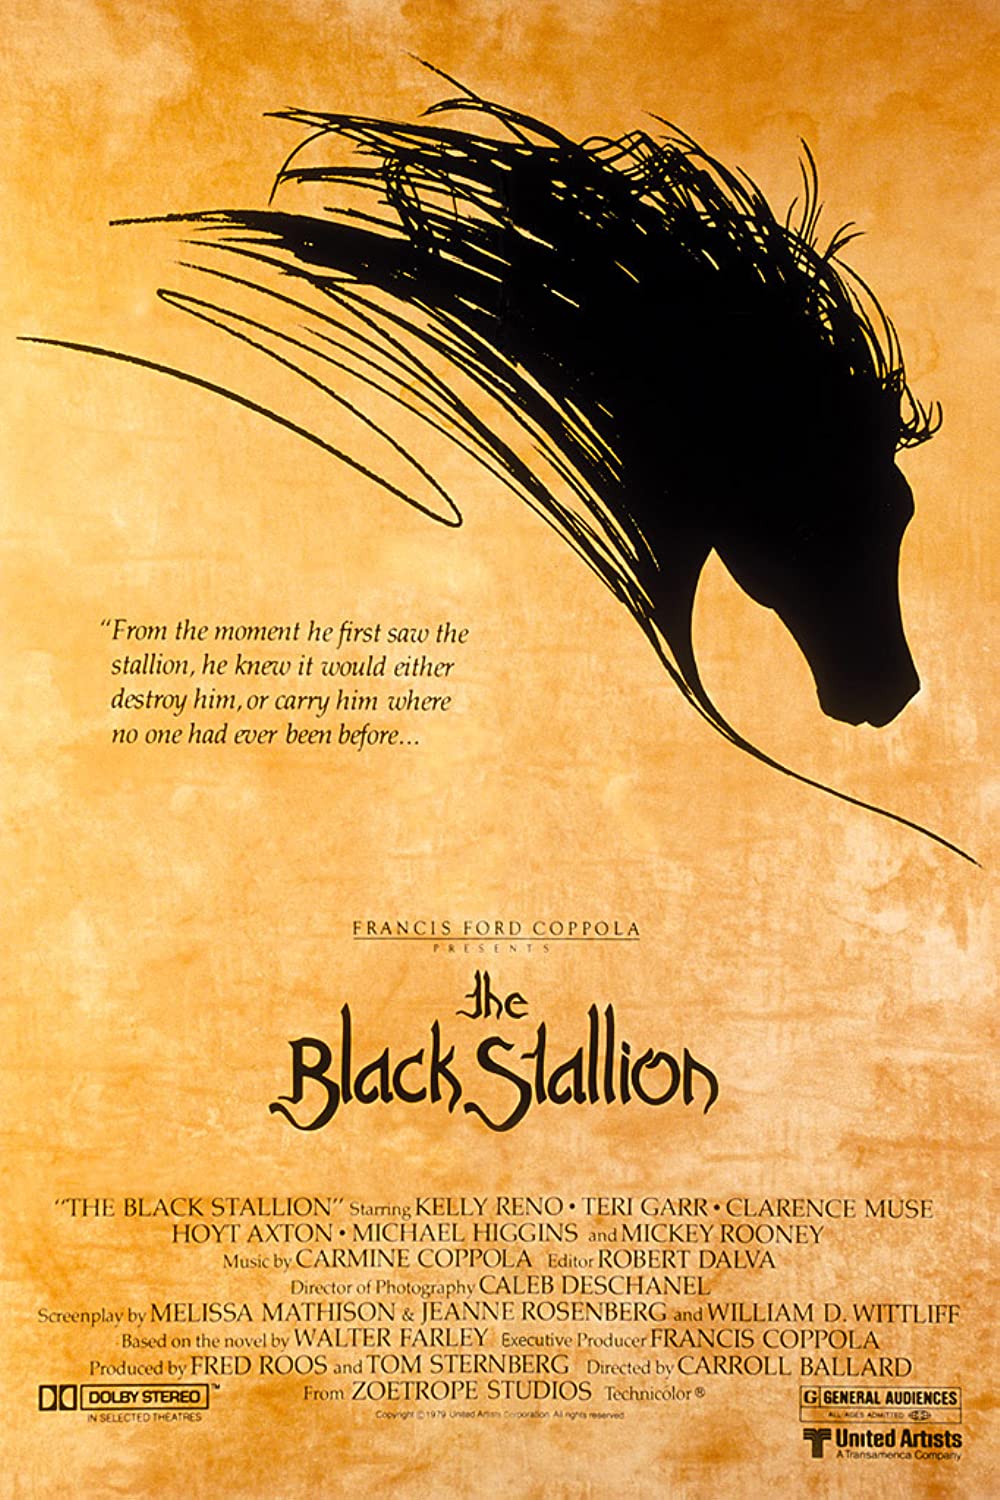 Filmbeschreibung zu The Black Stallion